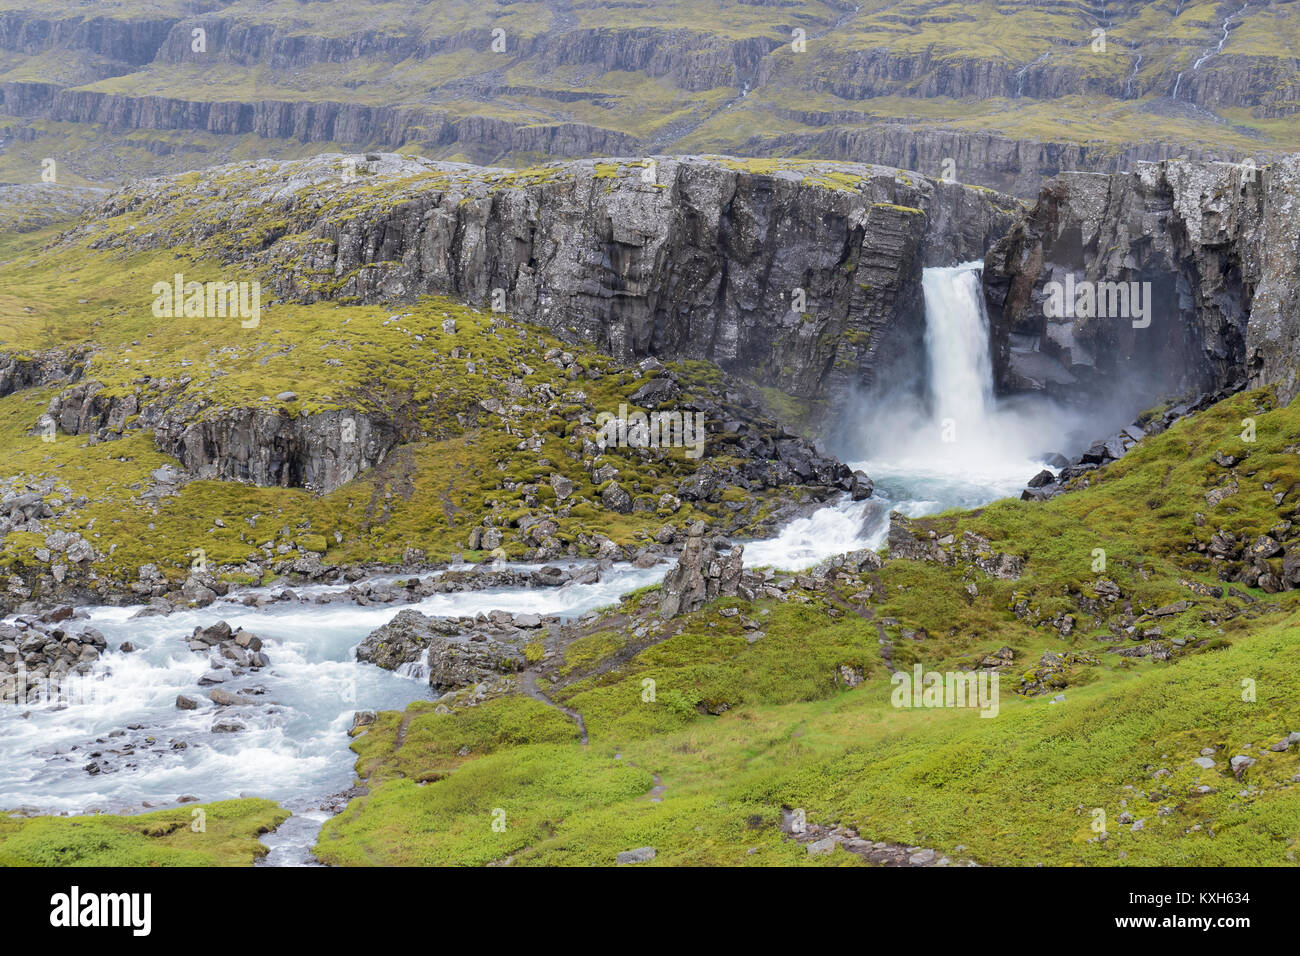 Paesaggio islandese, scenario con cascata fra le rocce Foto Stock